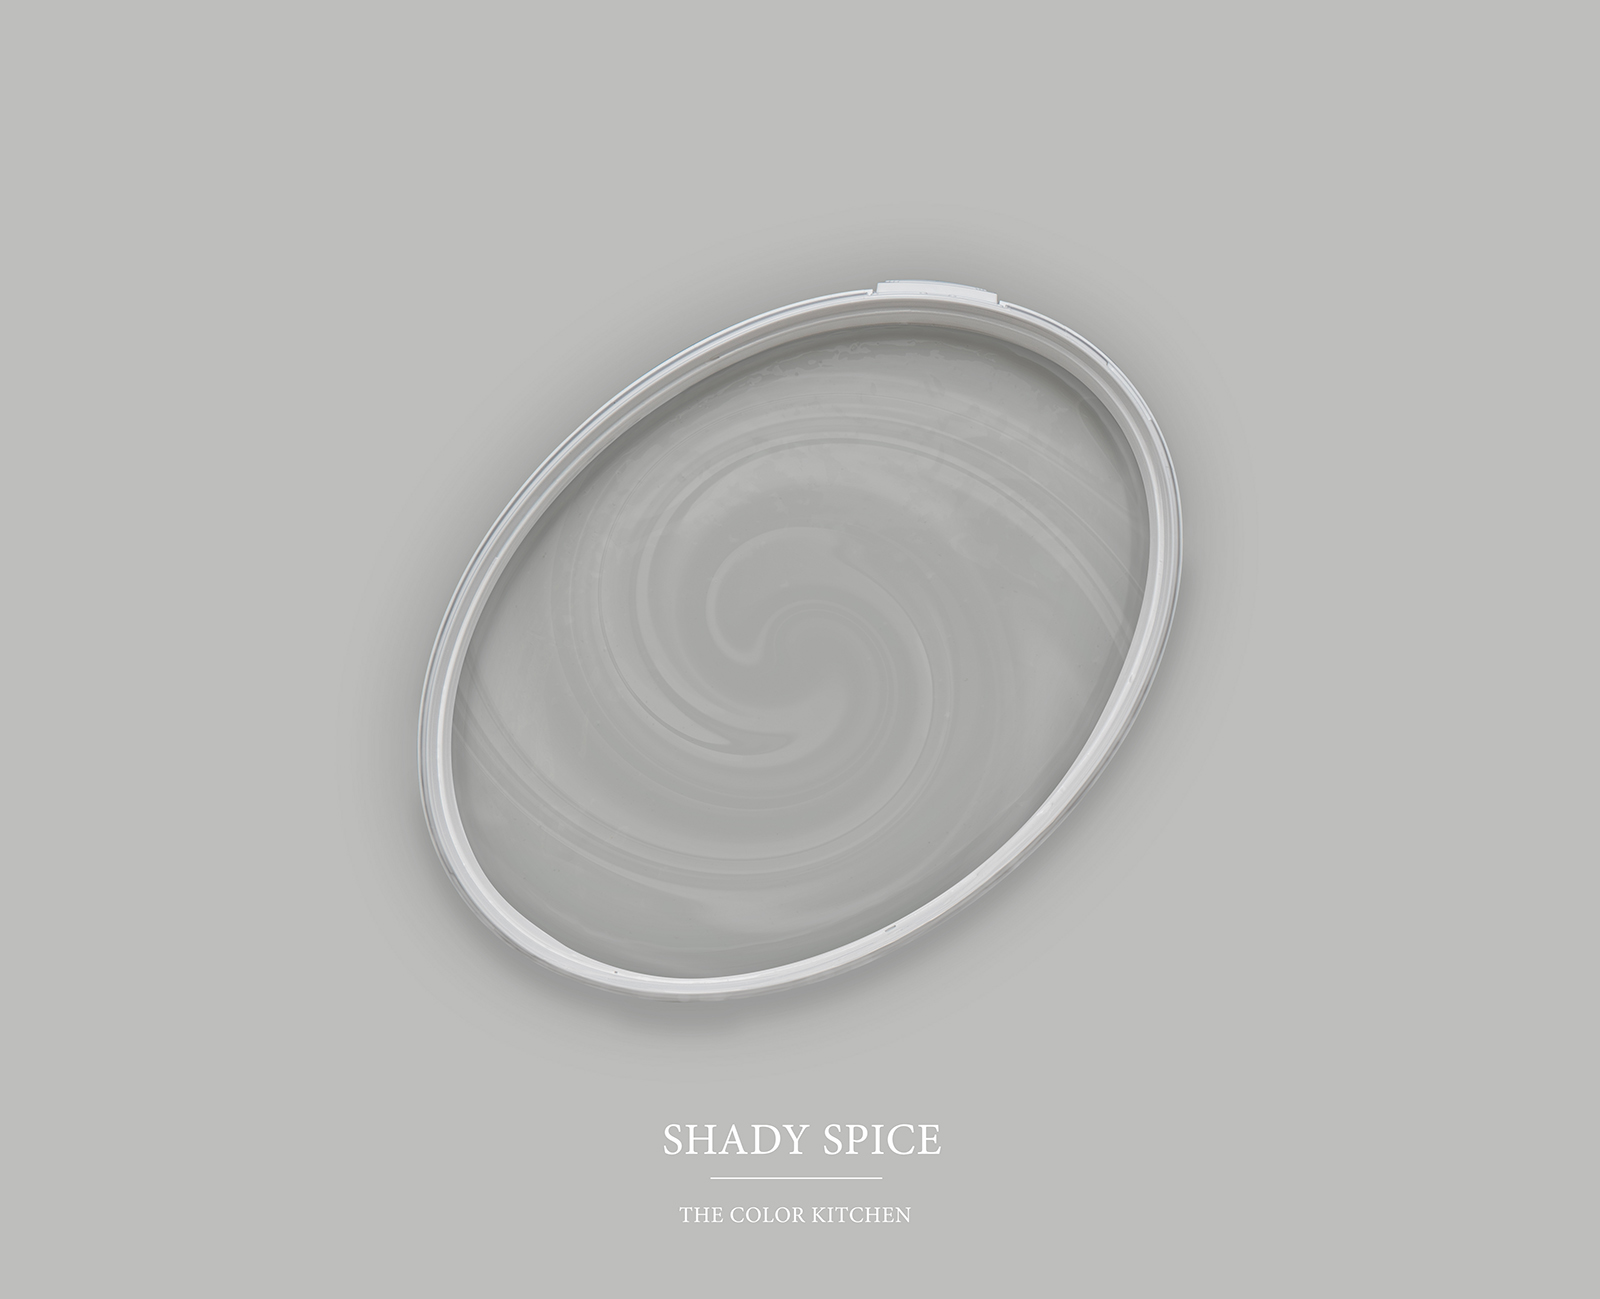         Wandfarbe TCK1004 »Shady Spice« in kühlem Grau – 2,5 Liter
    